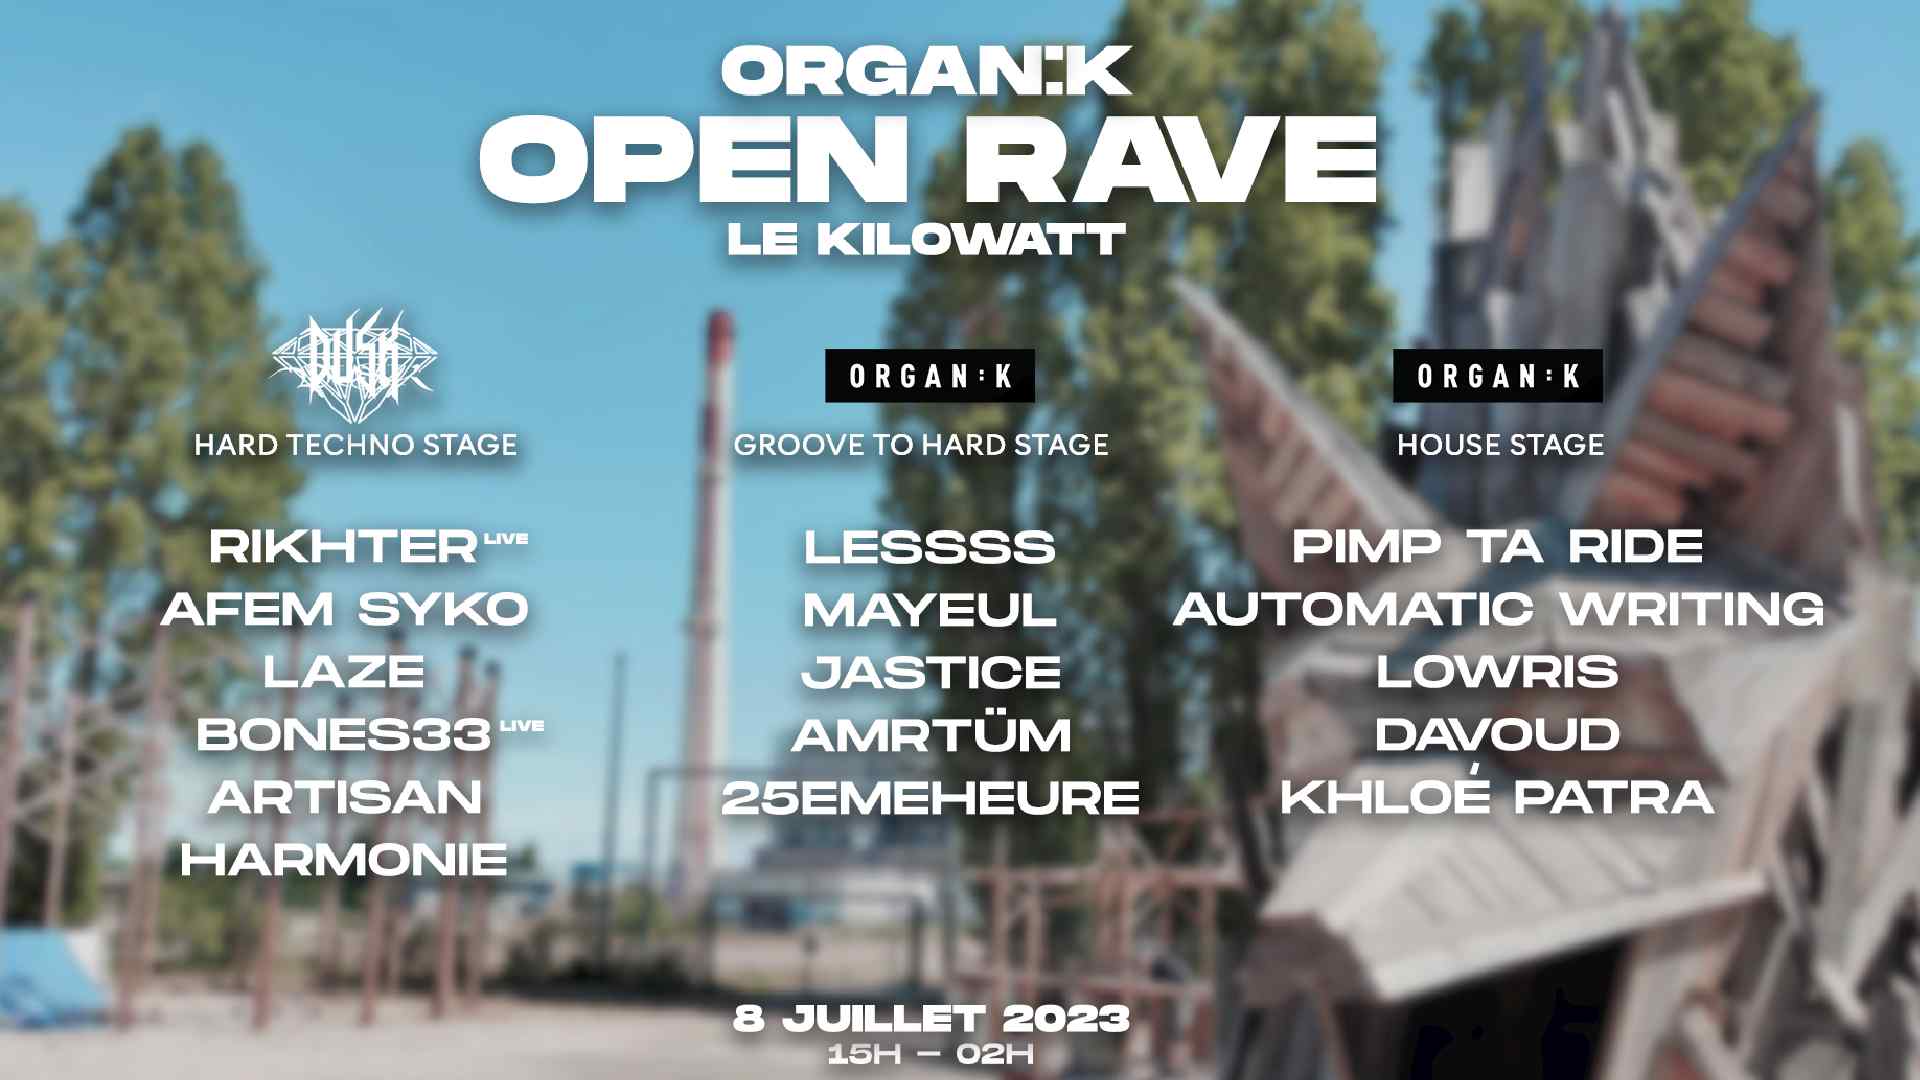 Affiche de l'open rave organik